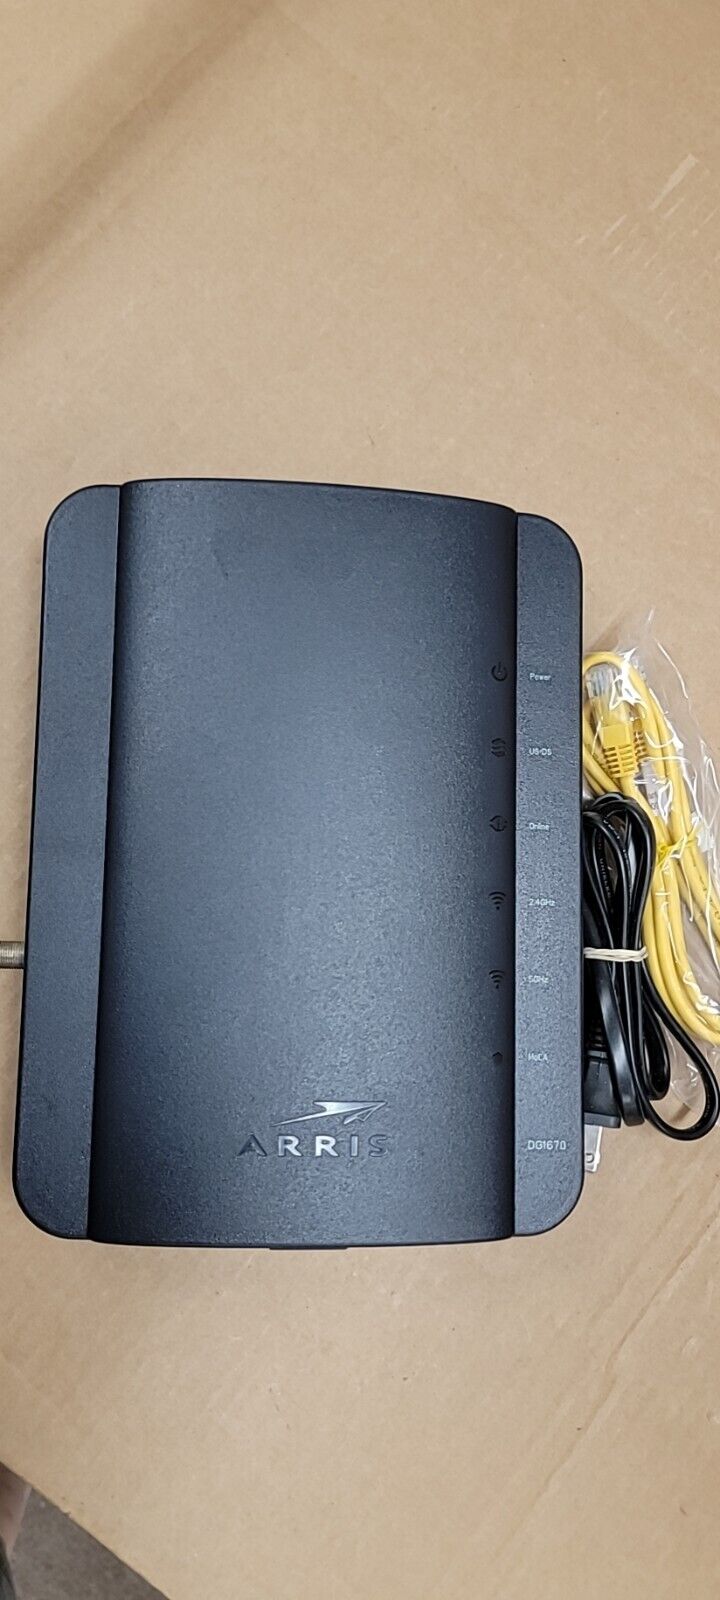 A lot of 30pcs Arris DG1670A Cable Modem Wireless Router DOCSIS 3.0